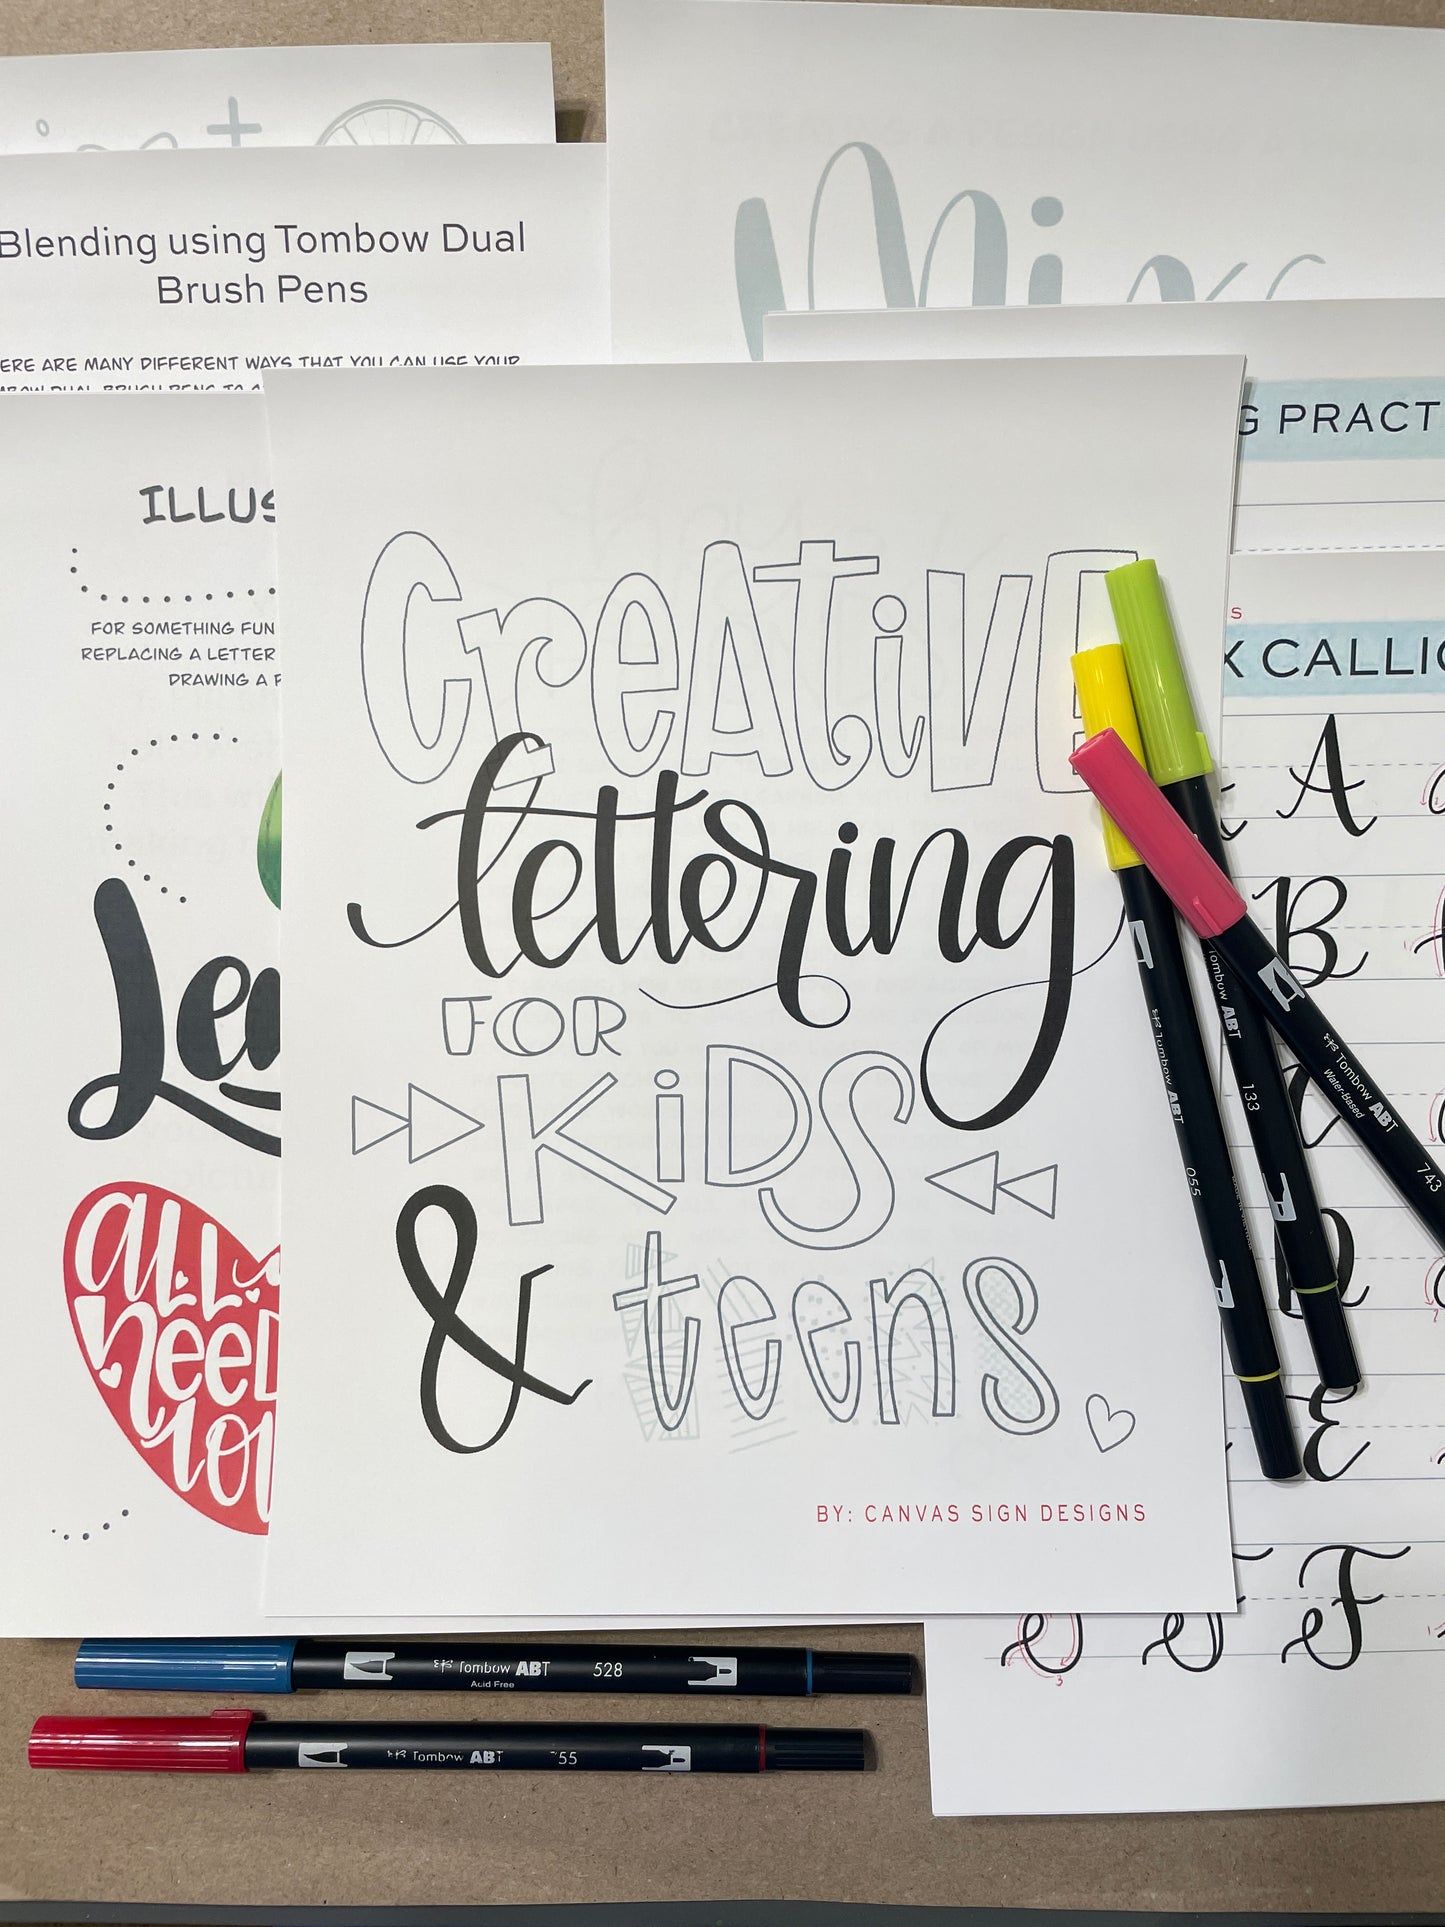 Creative Lettering for Kids & Teens DIGITAL Workbook